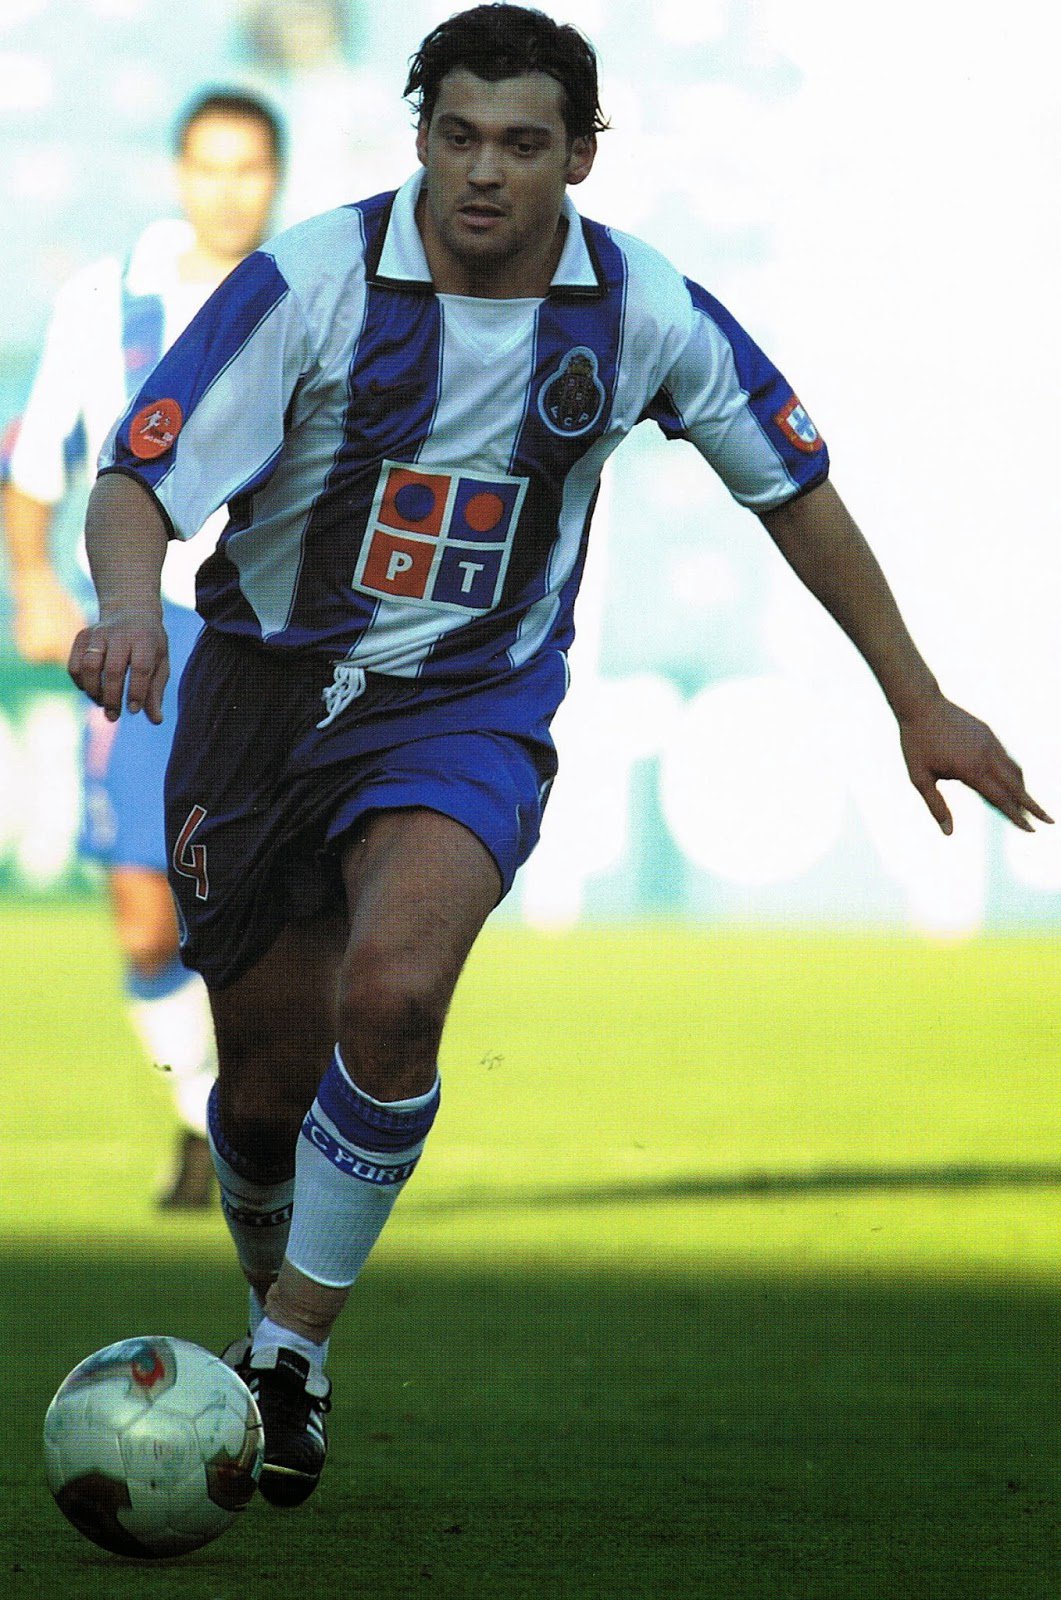 O Rui Barros era um mini diabo, tenho pesadelos com o FC Porto até